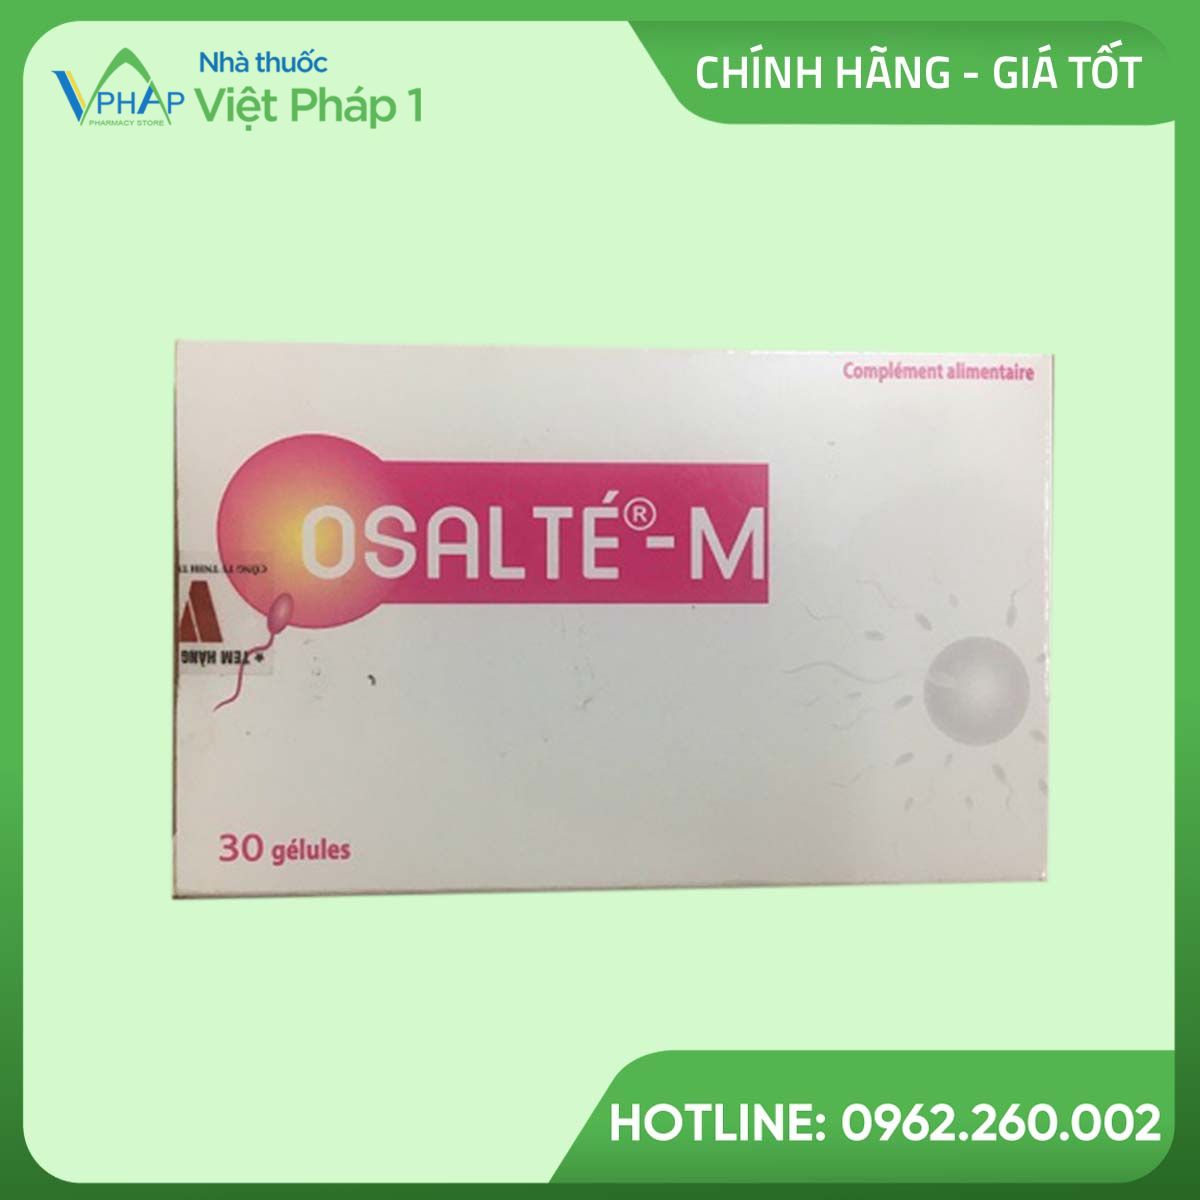 Osalte - M là sản phẩm dành cho phụ nữ